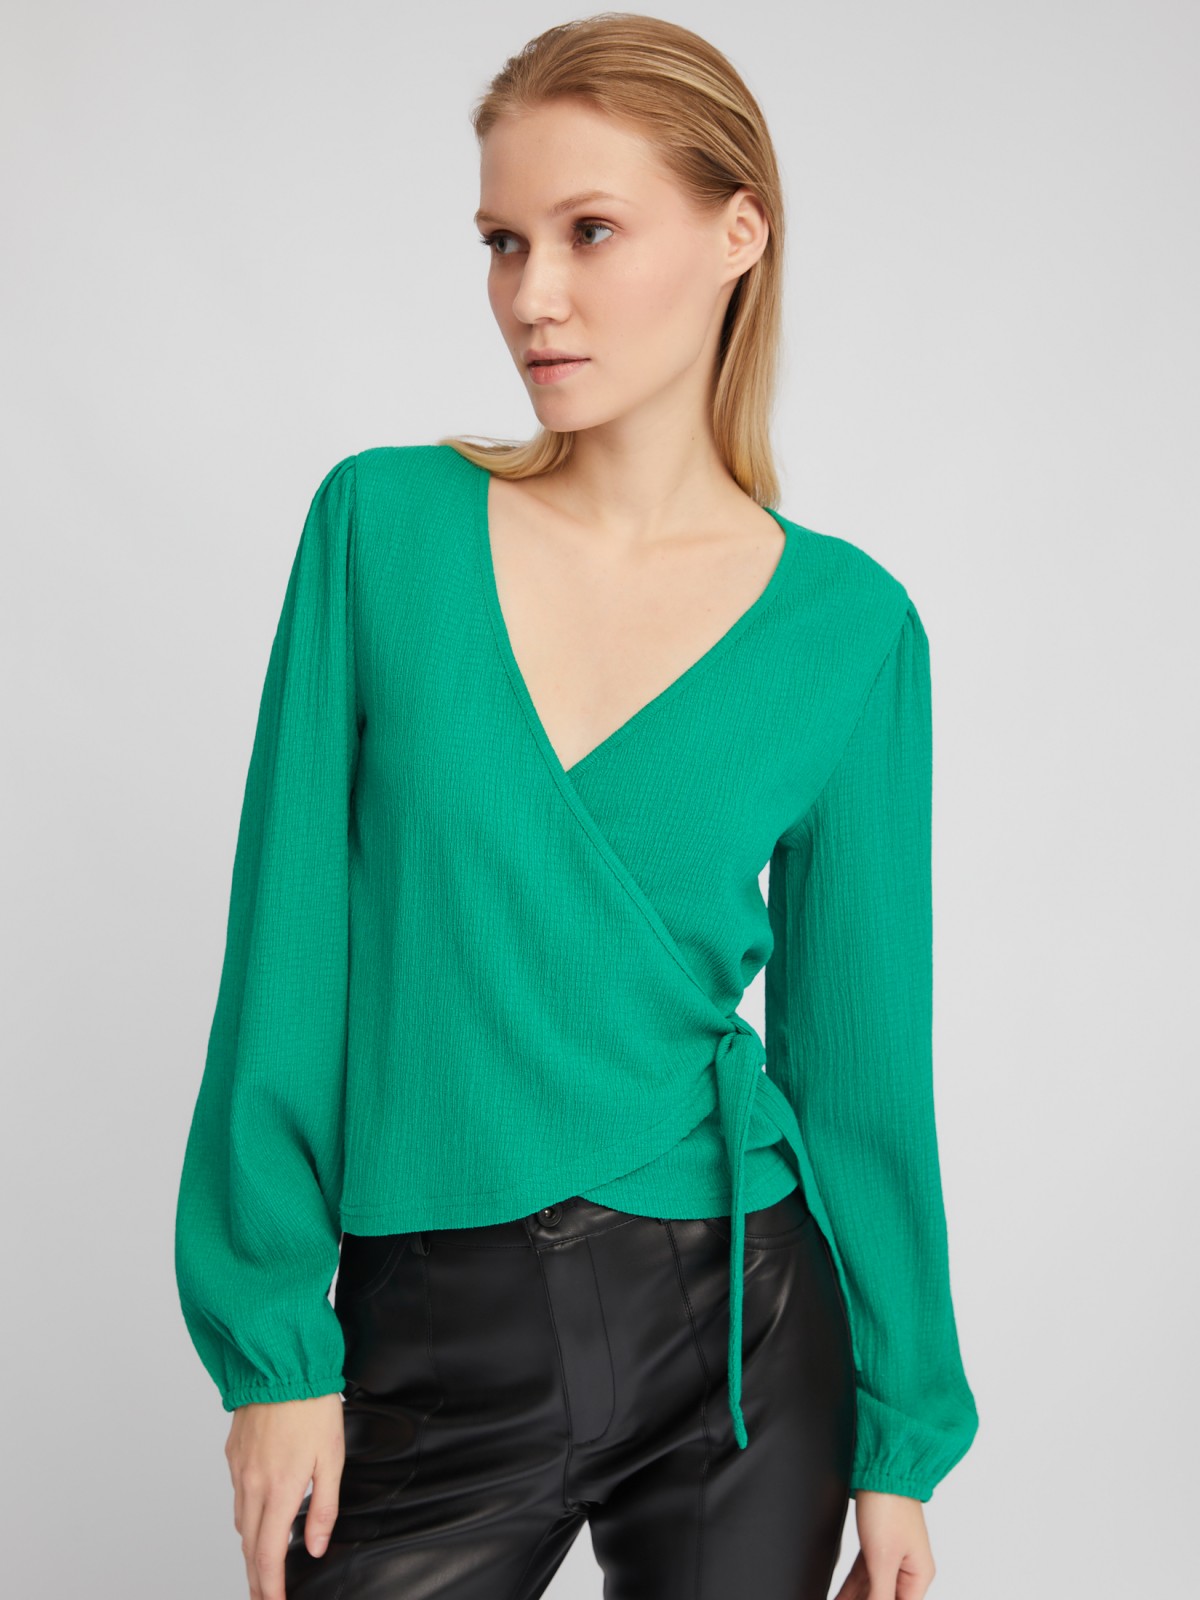 Укороченный топ-блузка на запах с объёмным рукавом zolla 024111162201, цвет зеленый, размер XS - фото 3